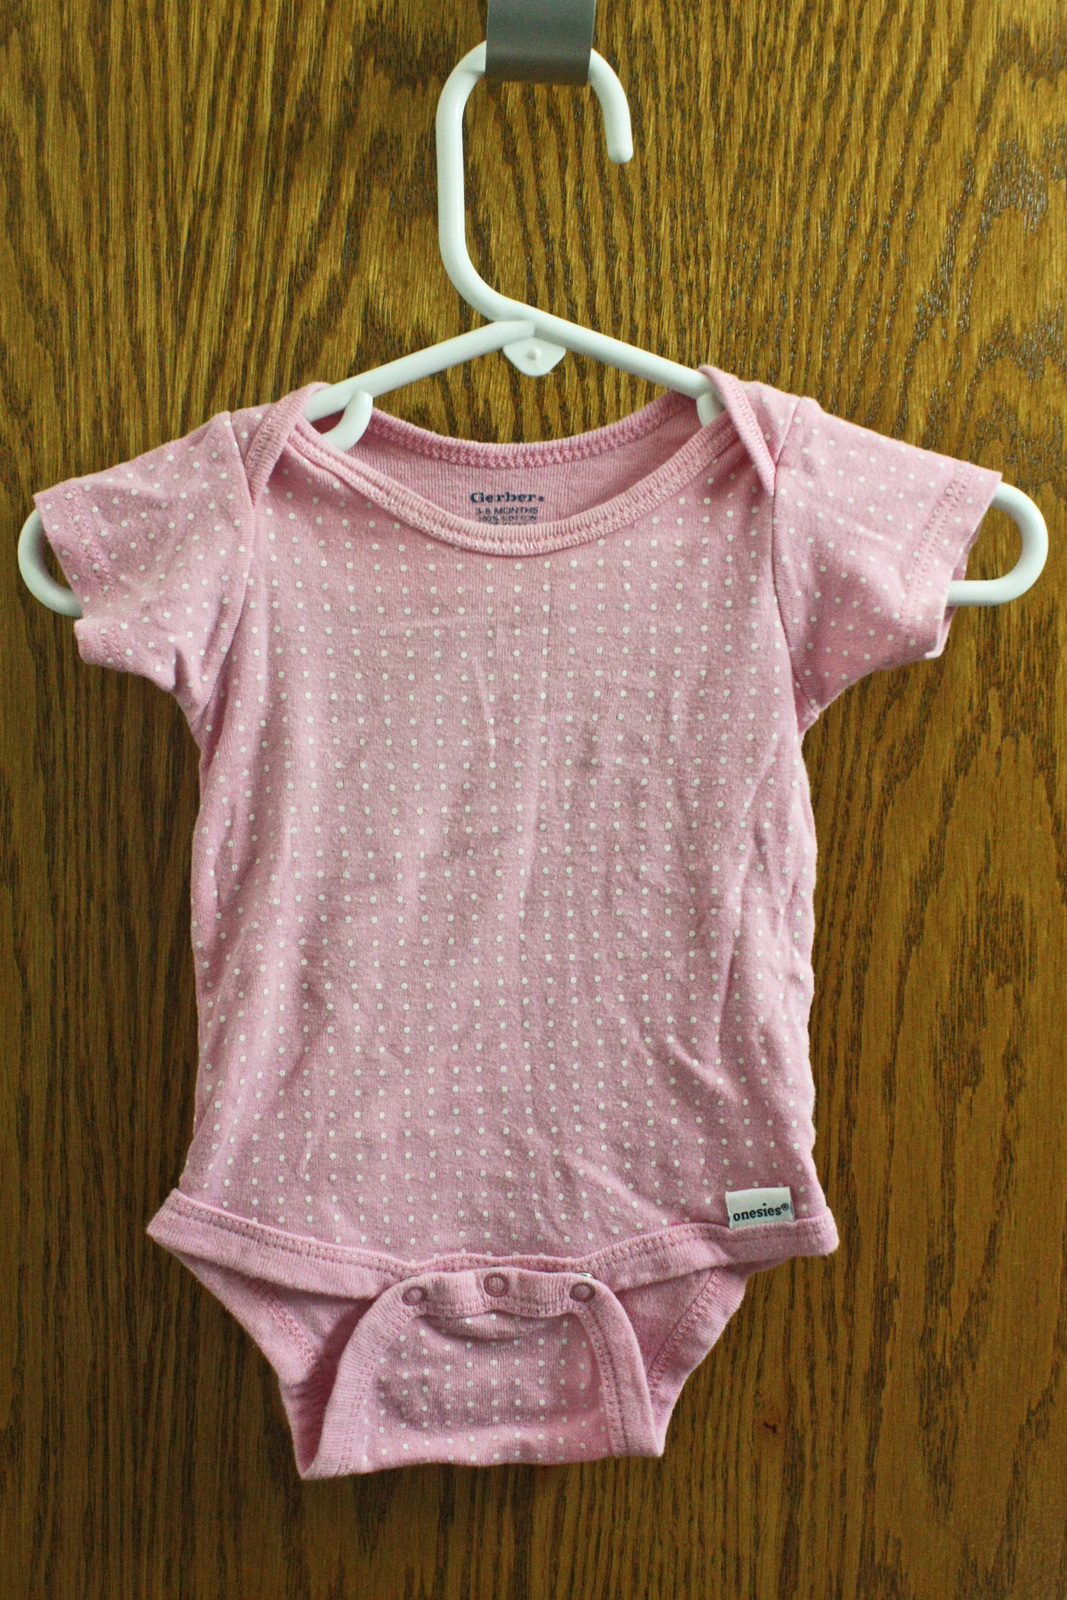 Gerber Pink Polka Dot One-Piece - Size 3-6 Months Girls - $5.99